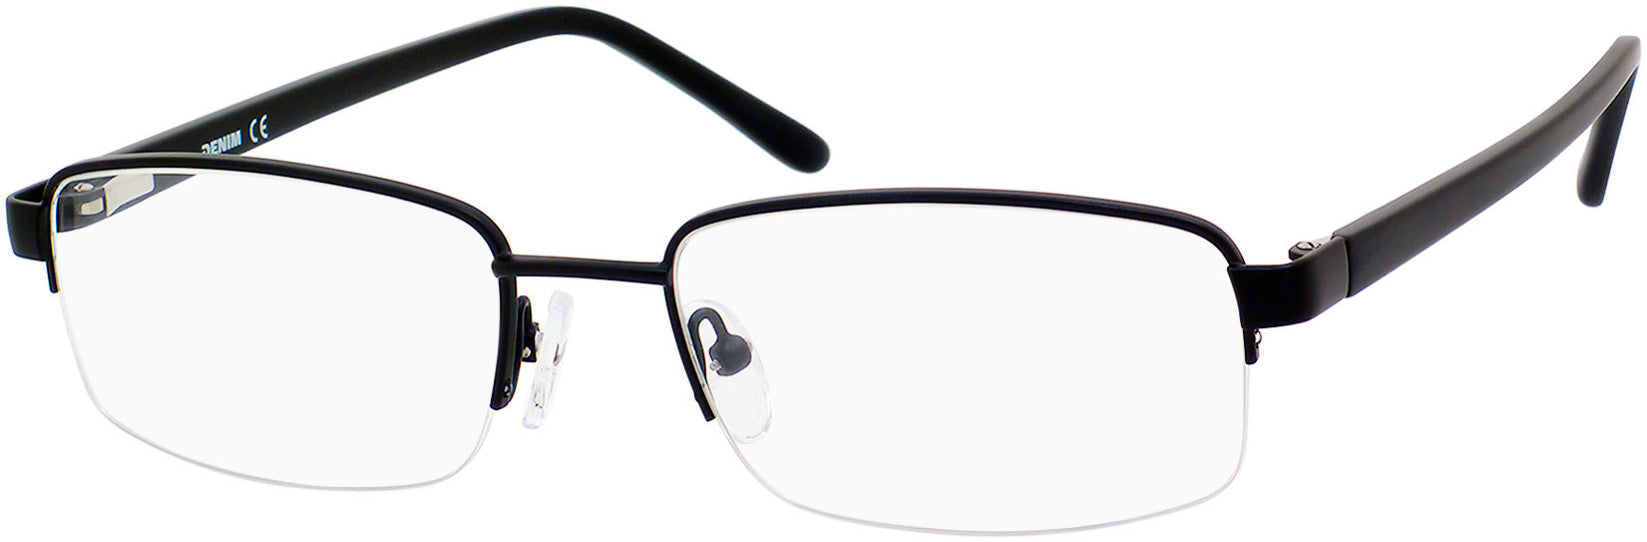  Denim 147 Rectangular Eyeglasses 0003-0003  Matte Black (00 Demo Lens)